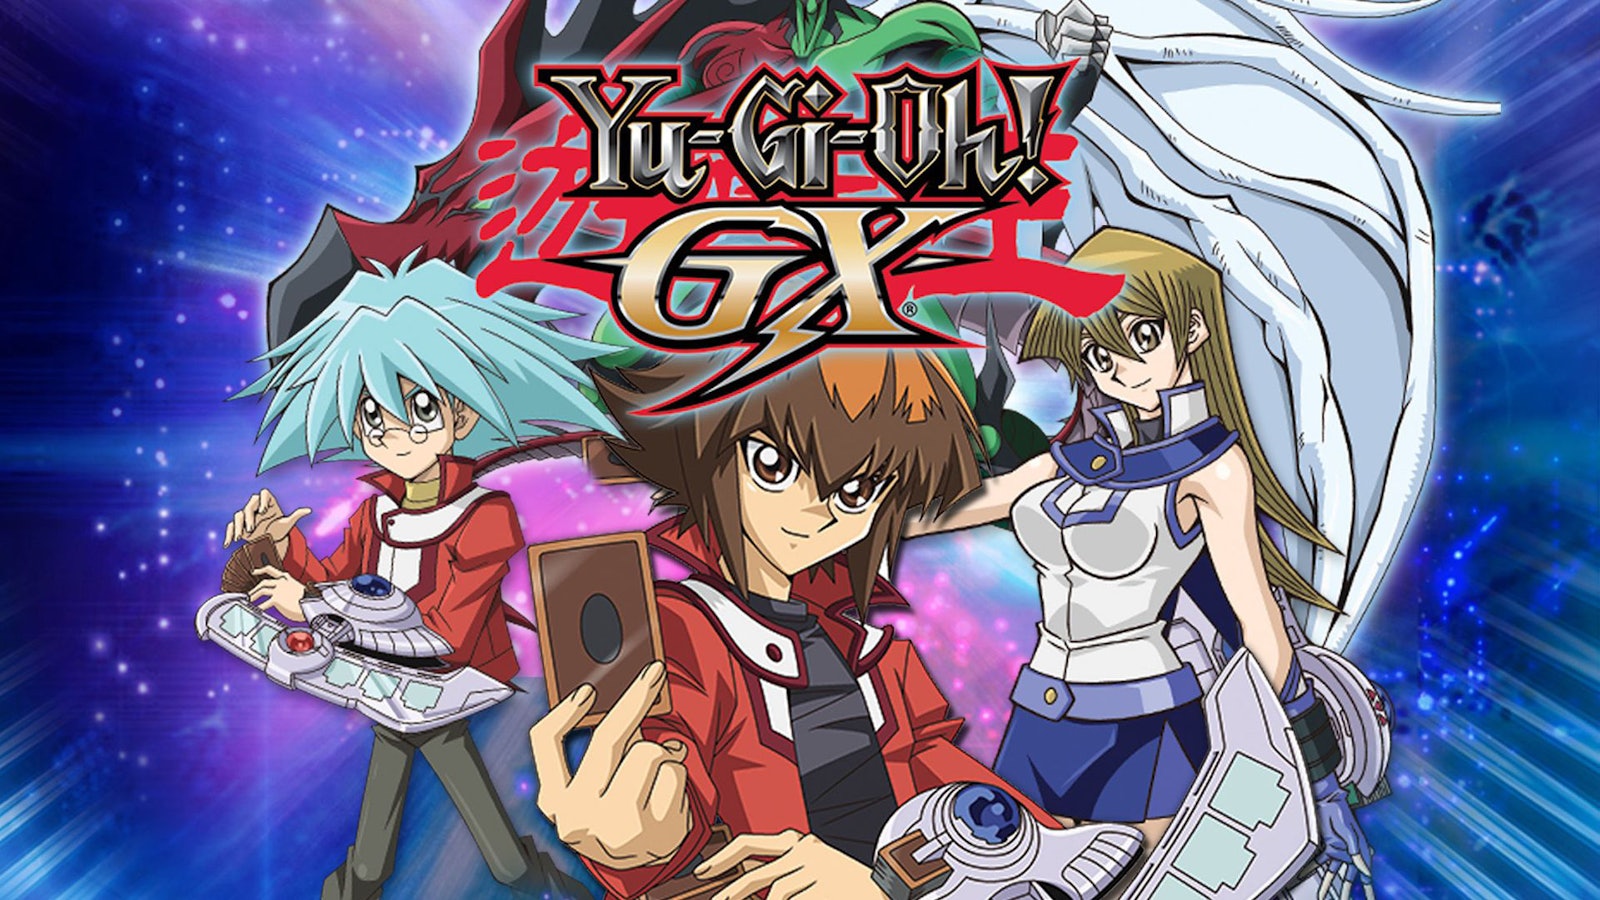 Onde assistir à série de TV Yu-Gi-Oh! GX em streaming on-line